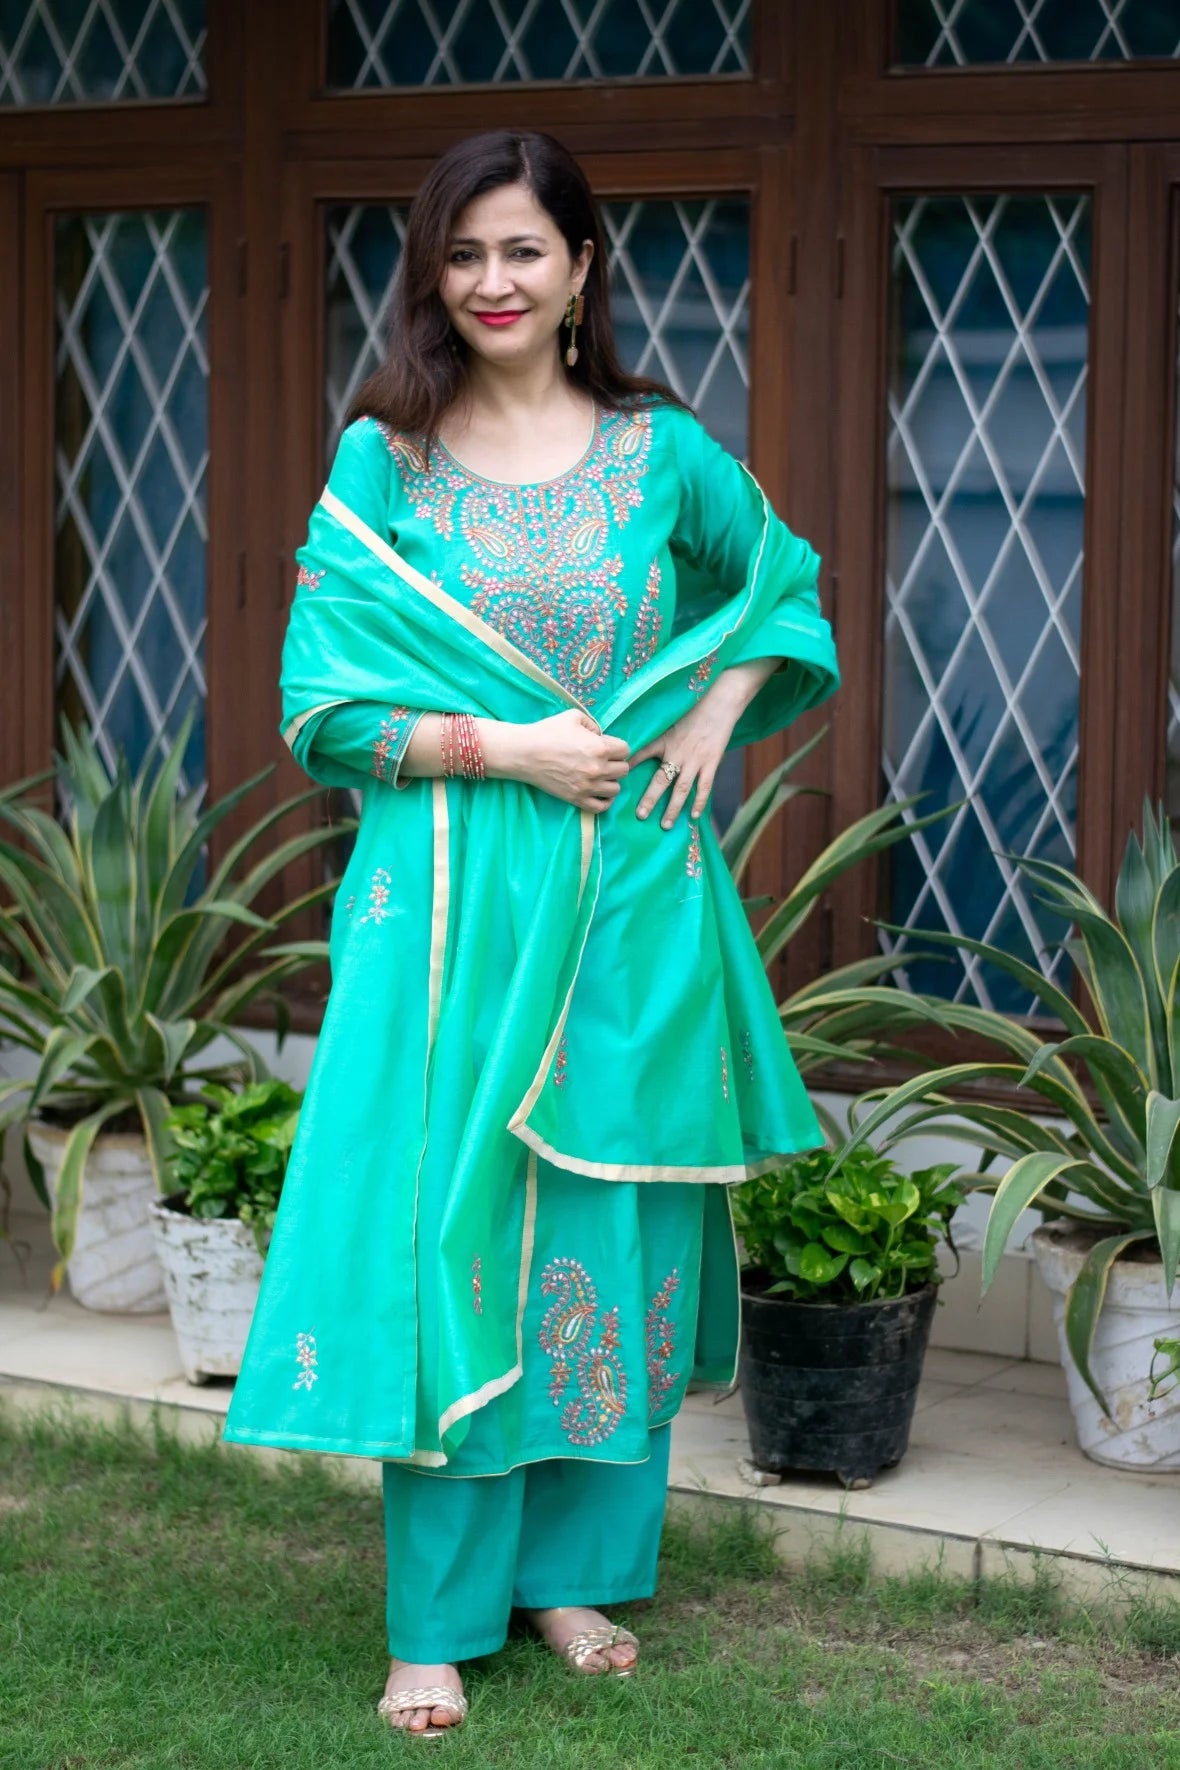 A woman wearing a sea green zari kurta with intricate embroidery.